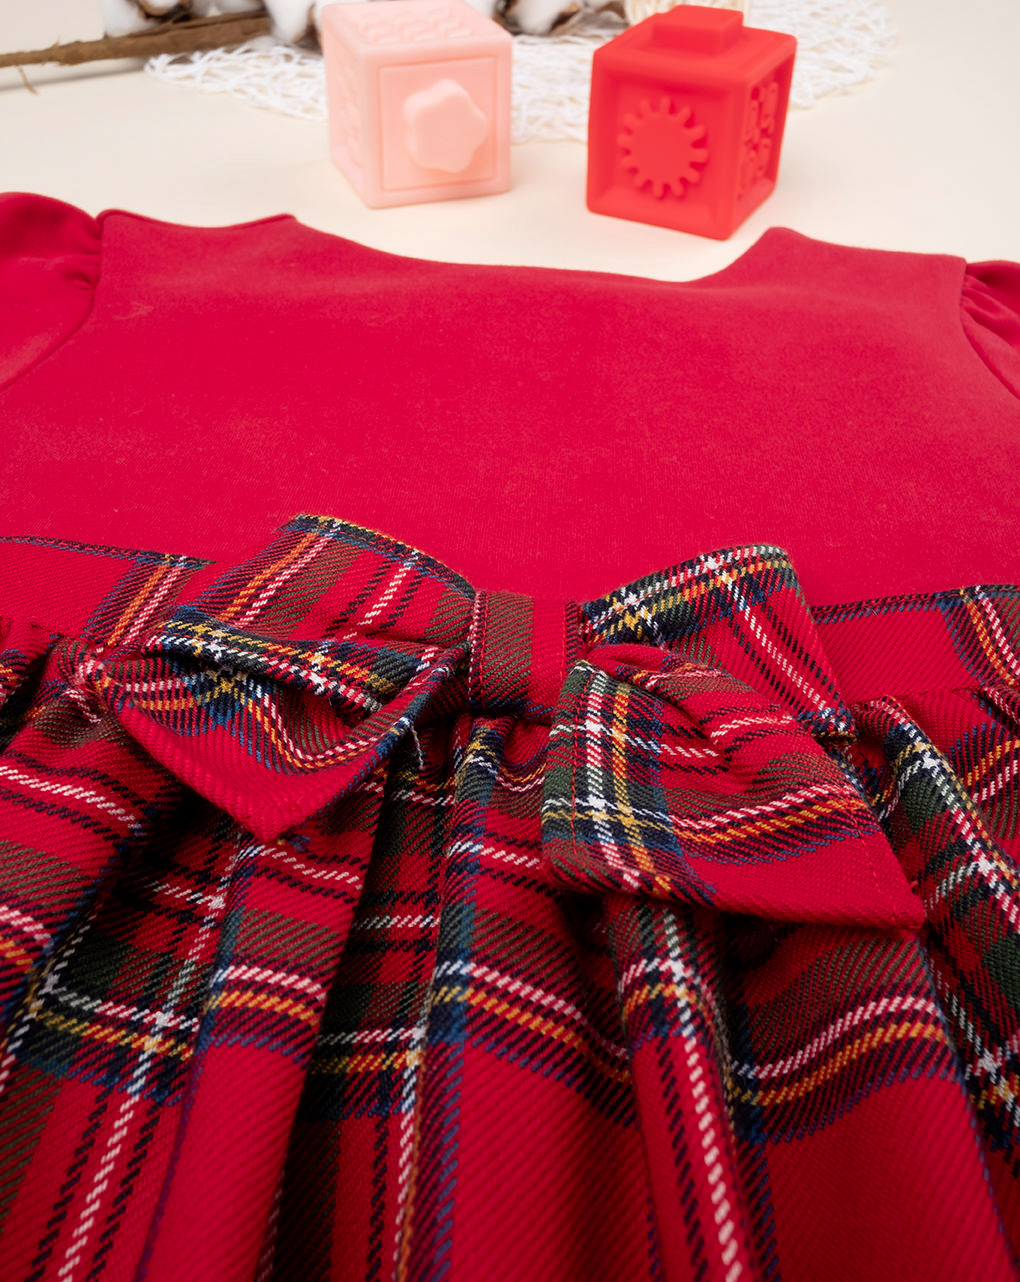 Vestido de ponto milão vermelho para rapariga - Prénatal